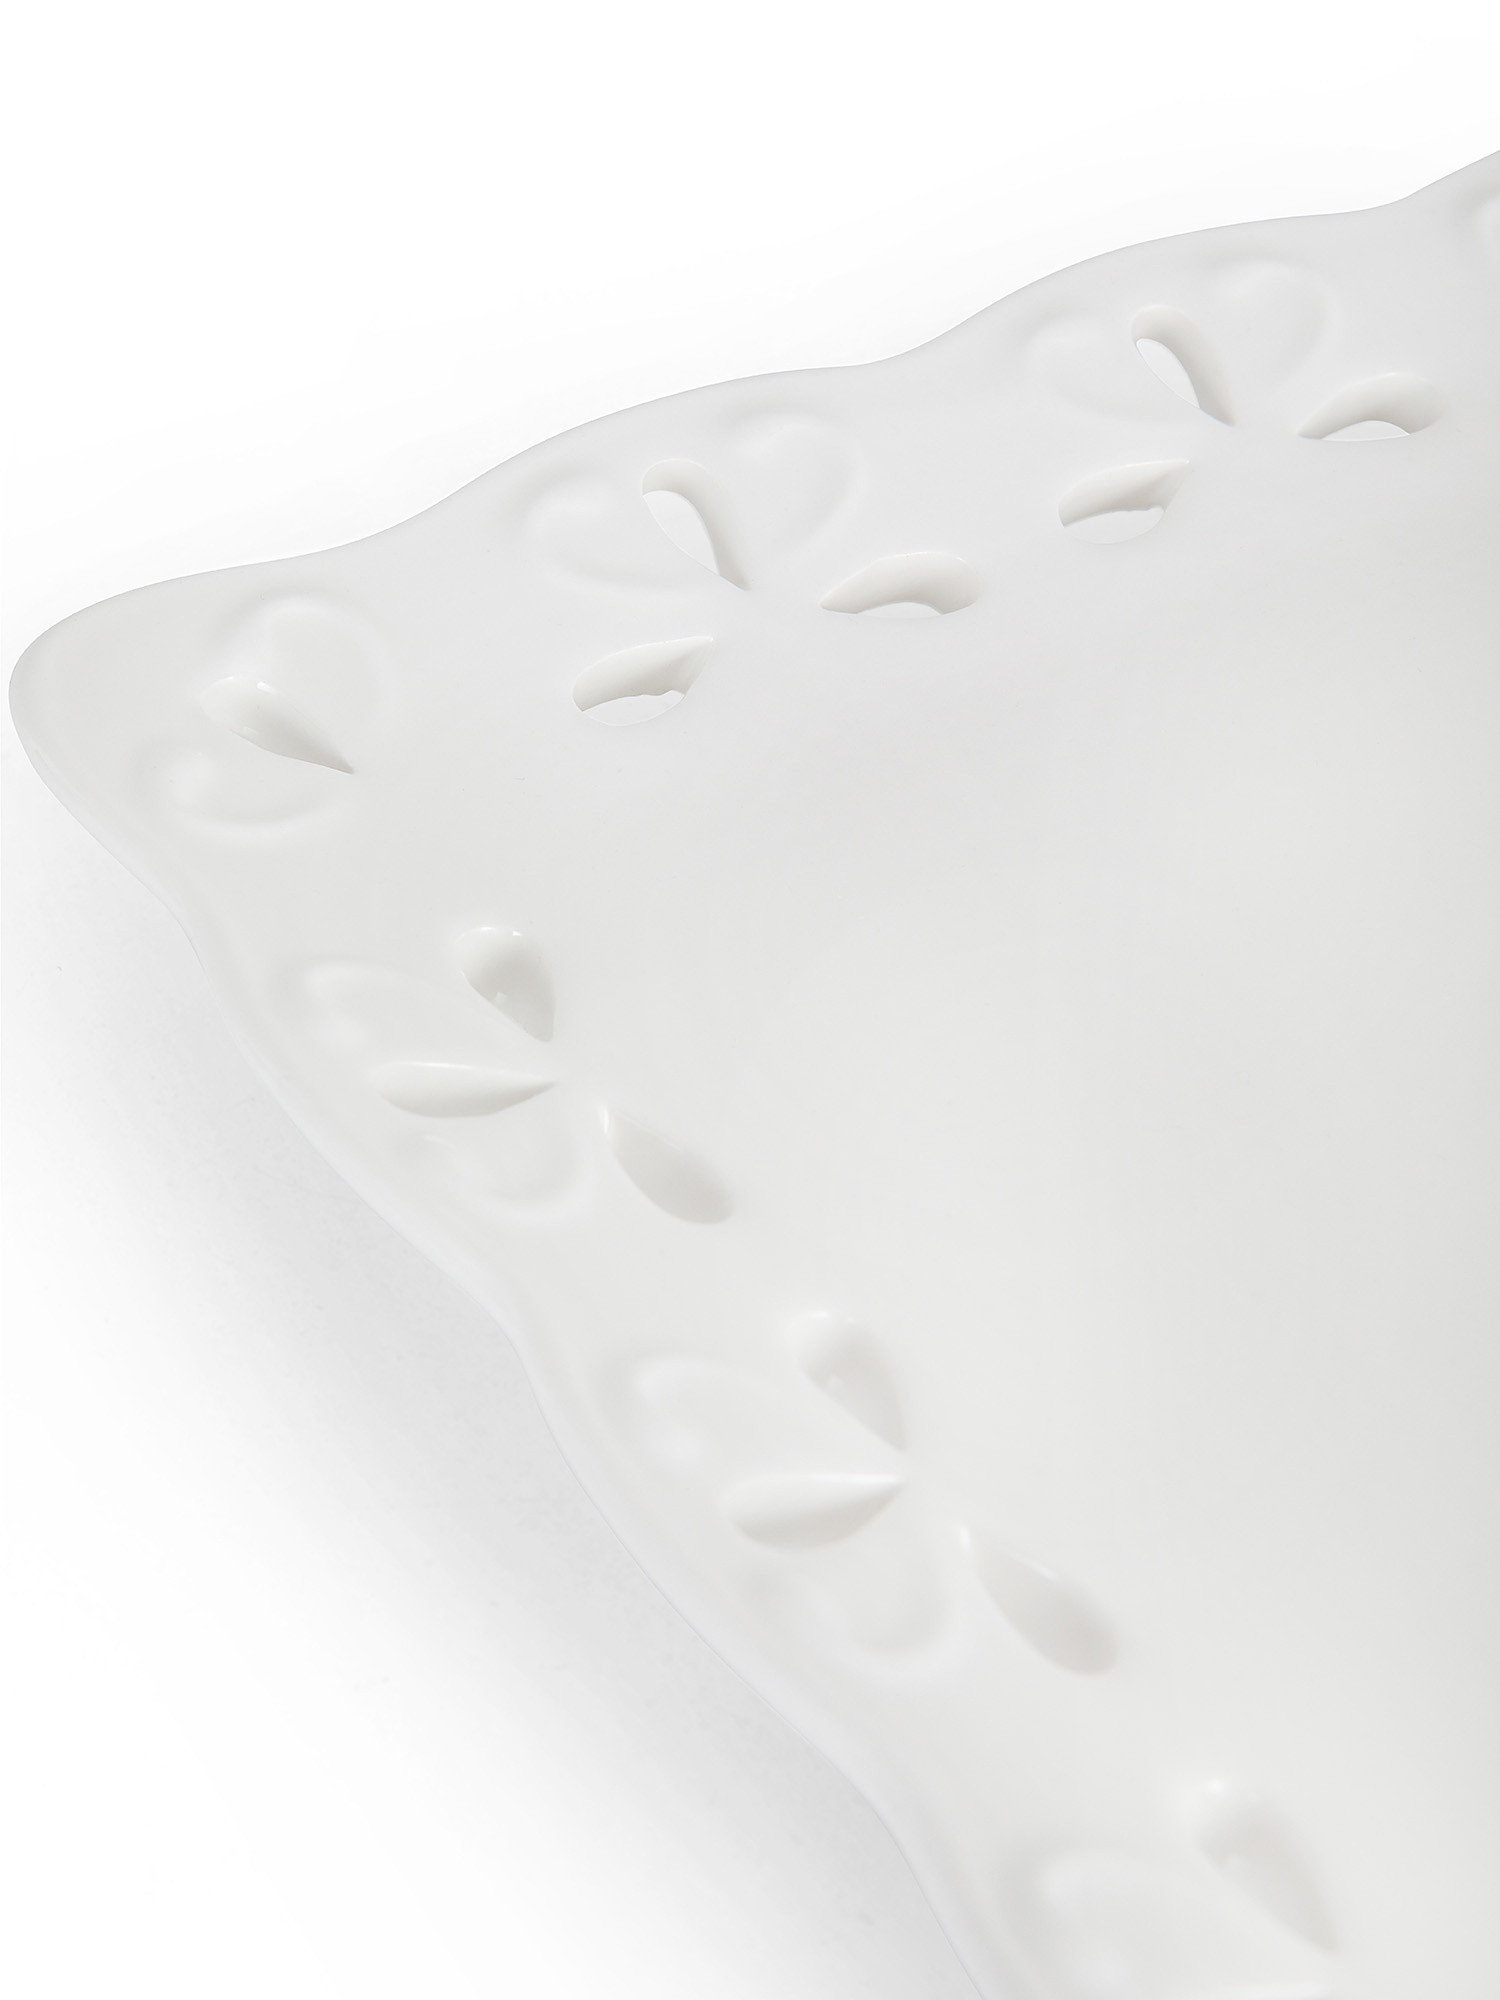 Vassoio ceramica con bordo traforato, Bianco, large image number 1